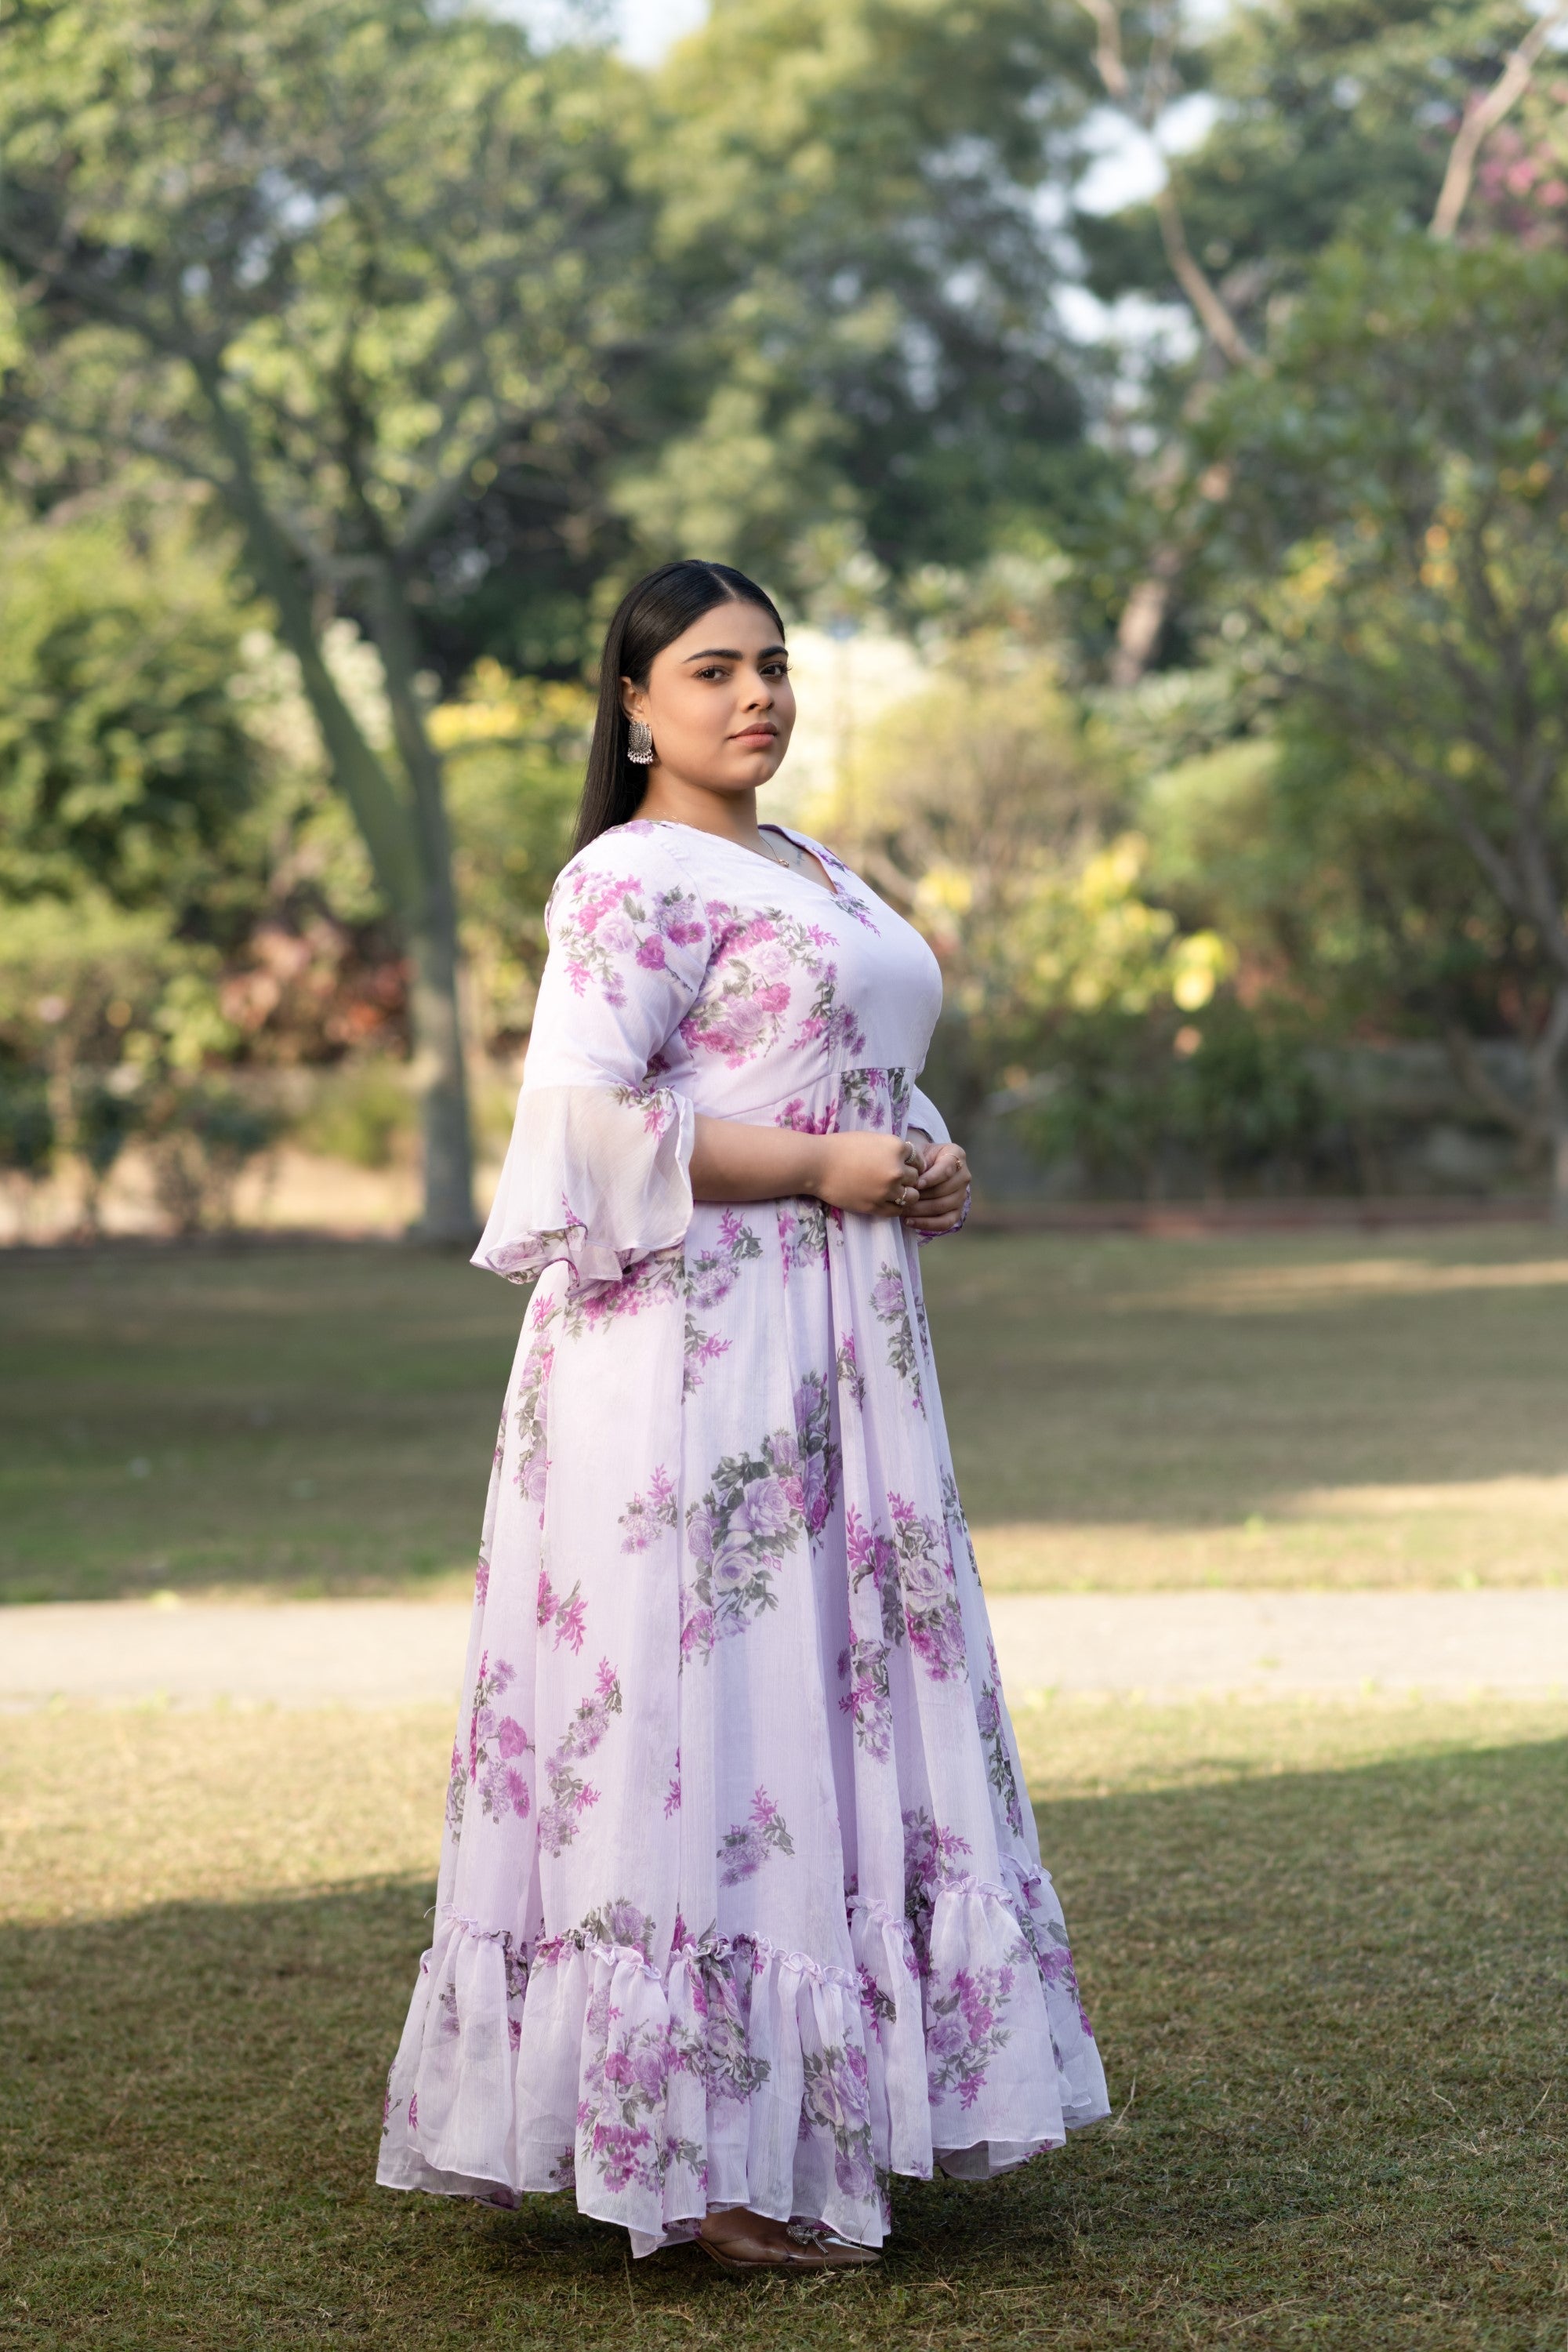 Women's Lavender Maxi Dress Floral - Saras The Label- 1Pc Set